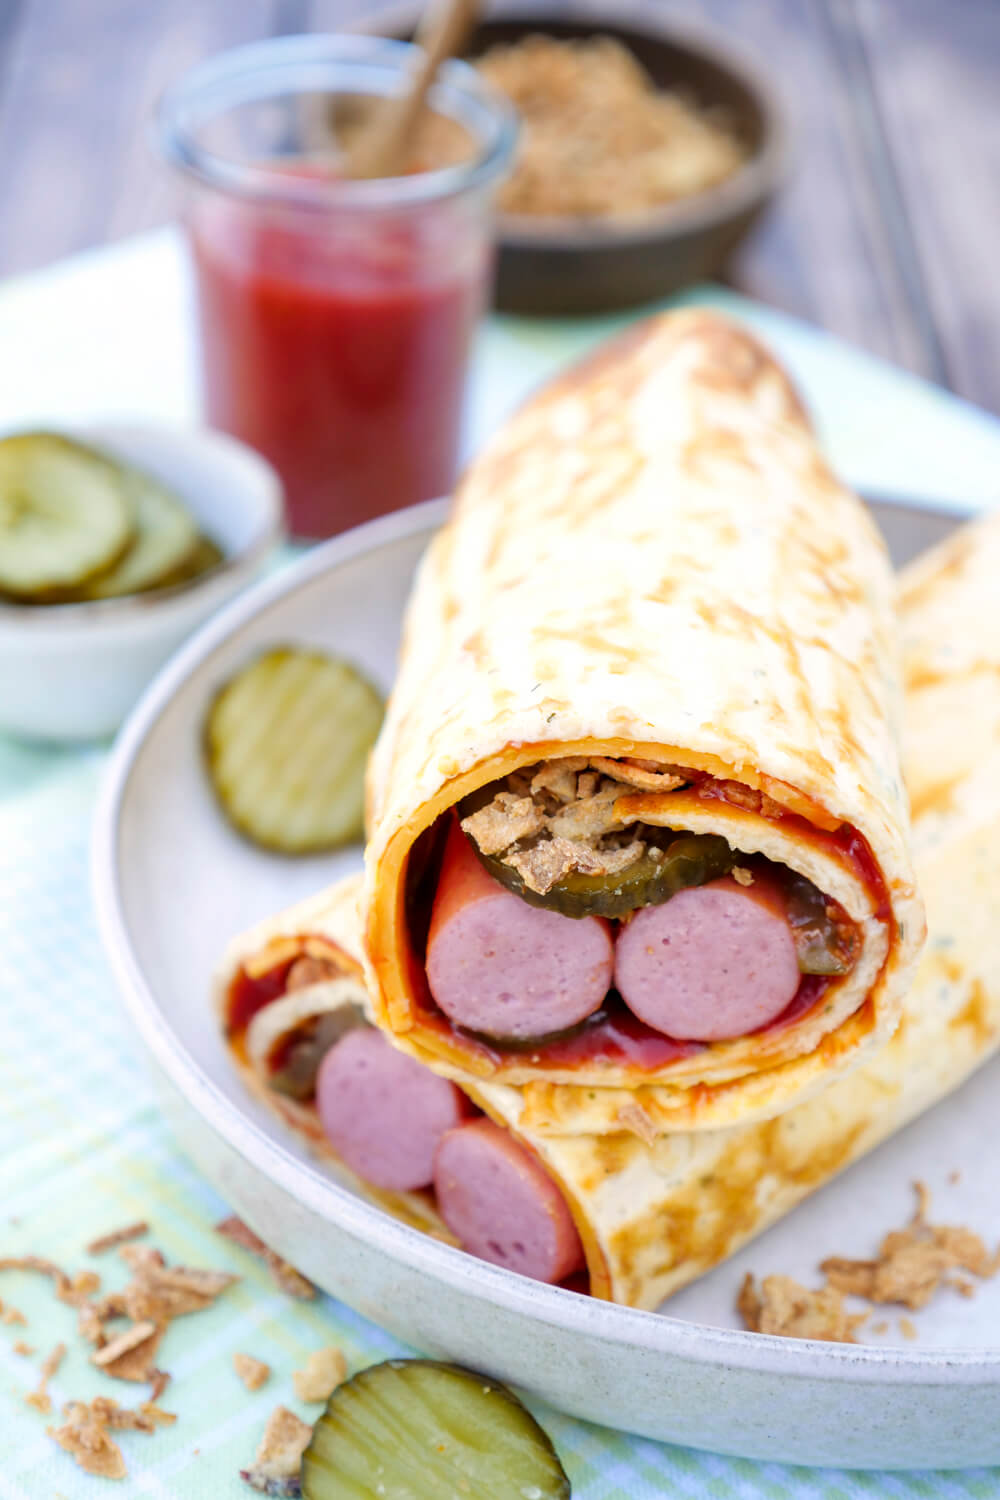 Low Carb Hotdog Rolle mit Würstchen, Gurken, Ketchup, Senf und Röstzwiebeln - perfektes Low Carb Fastfood